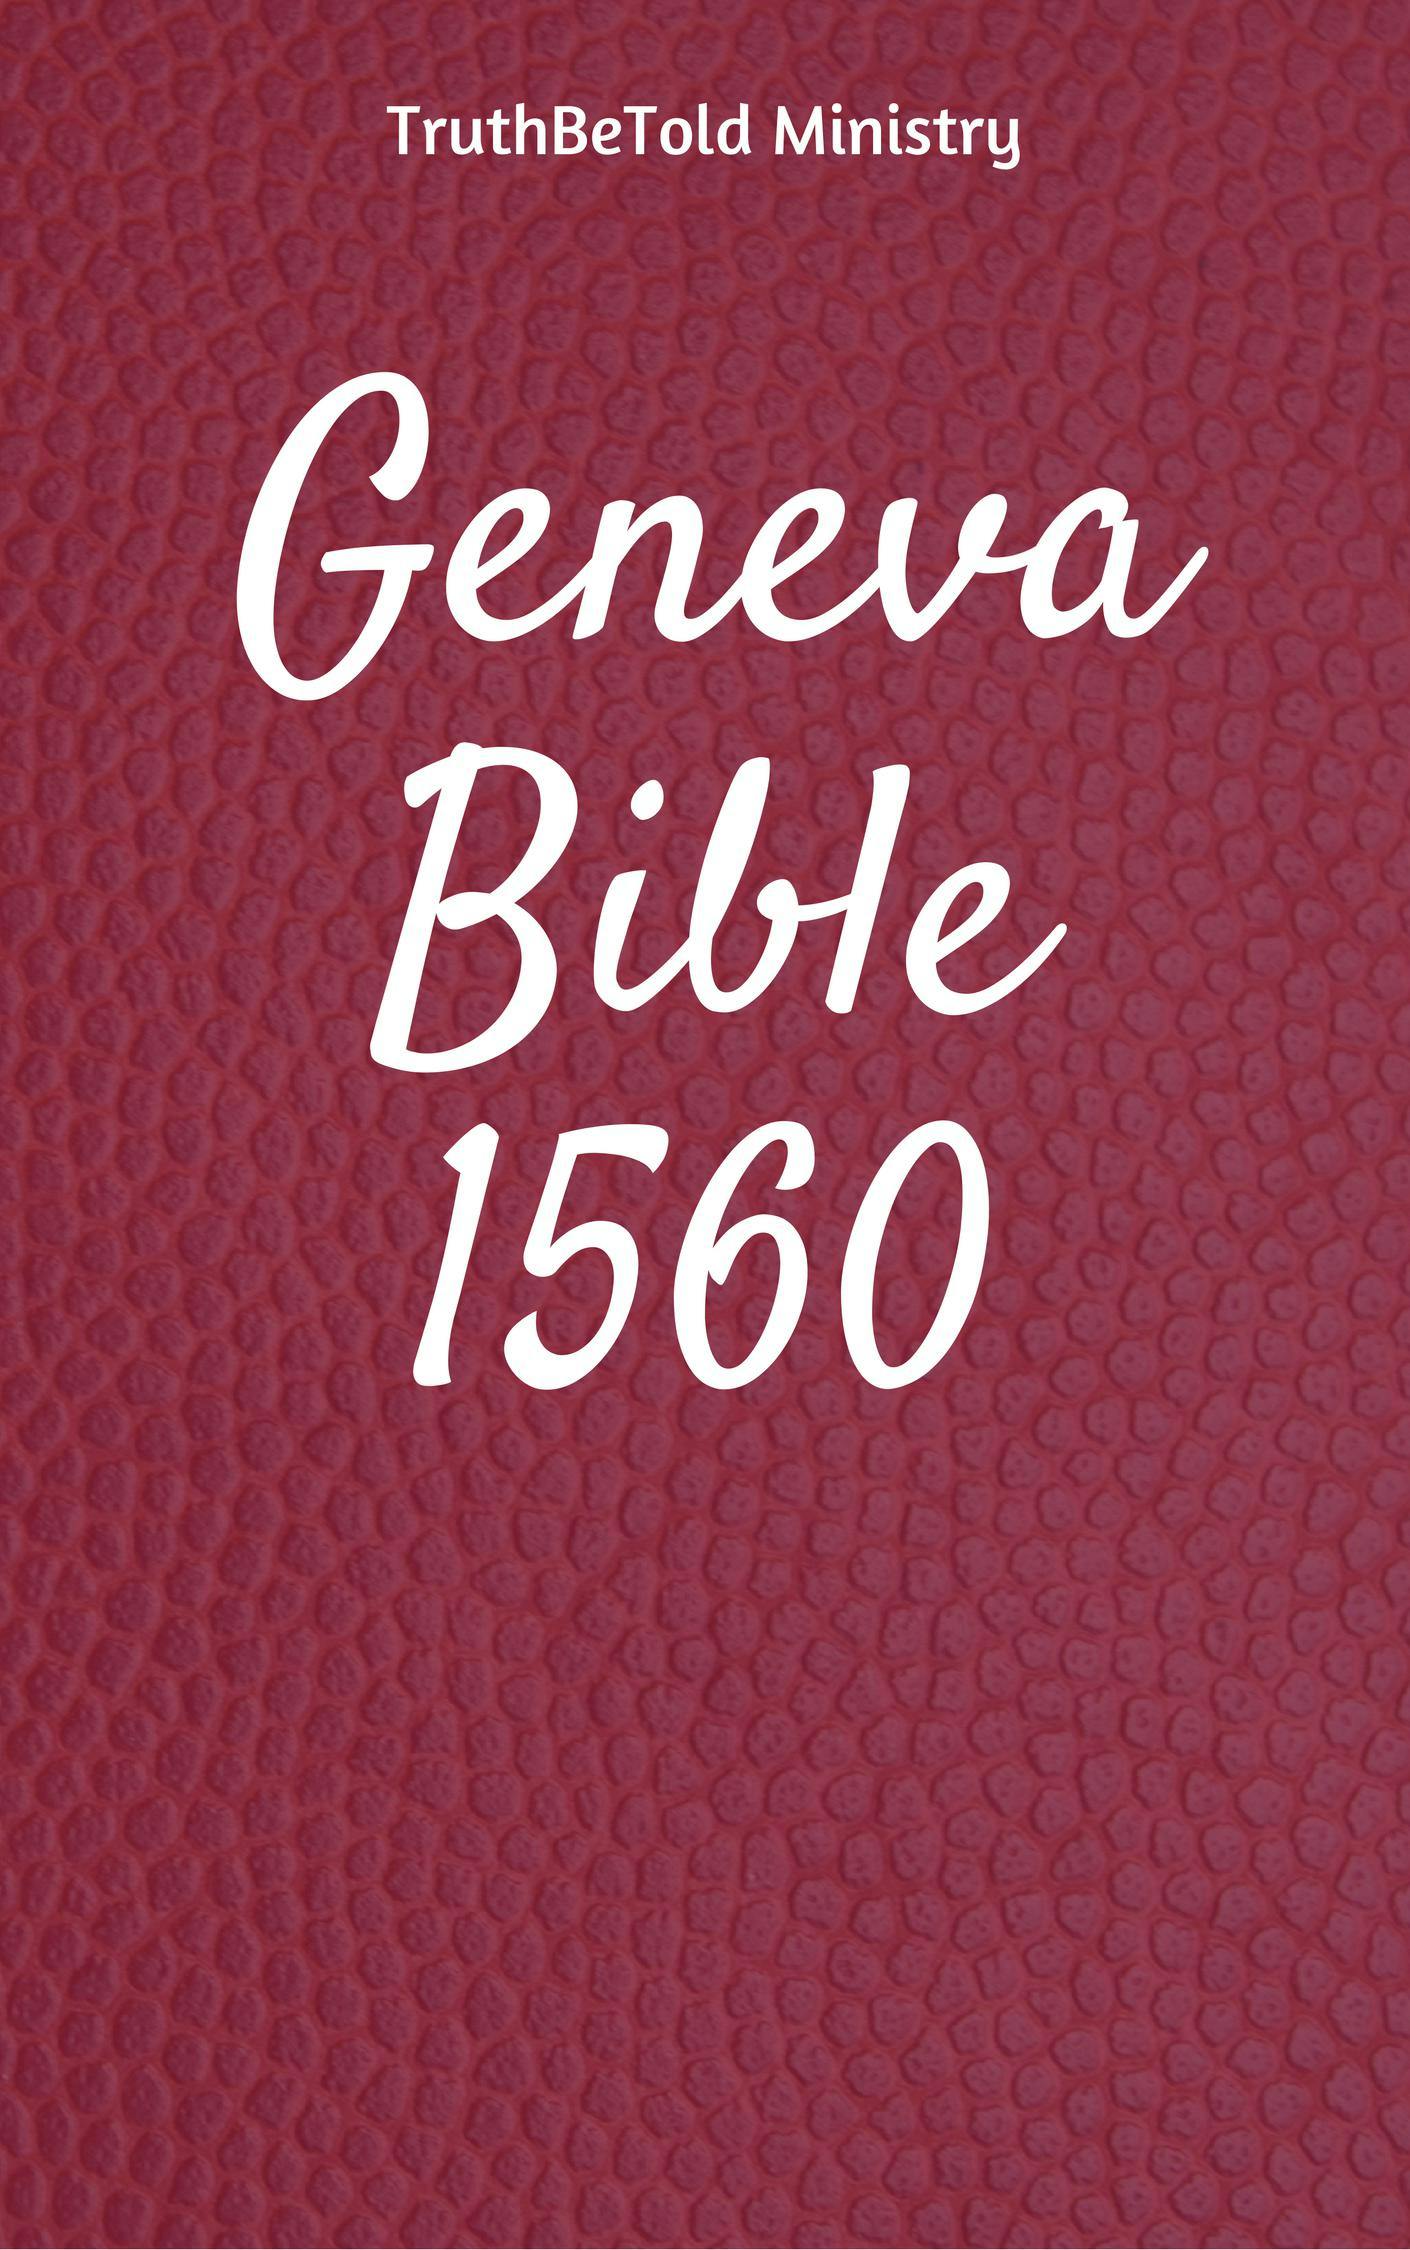 Geneva Bible 1560 - undefined